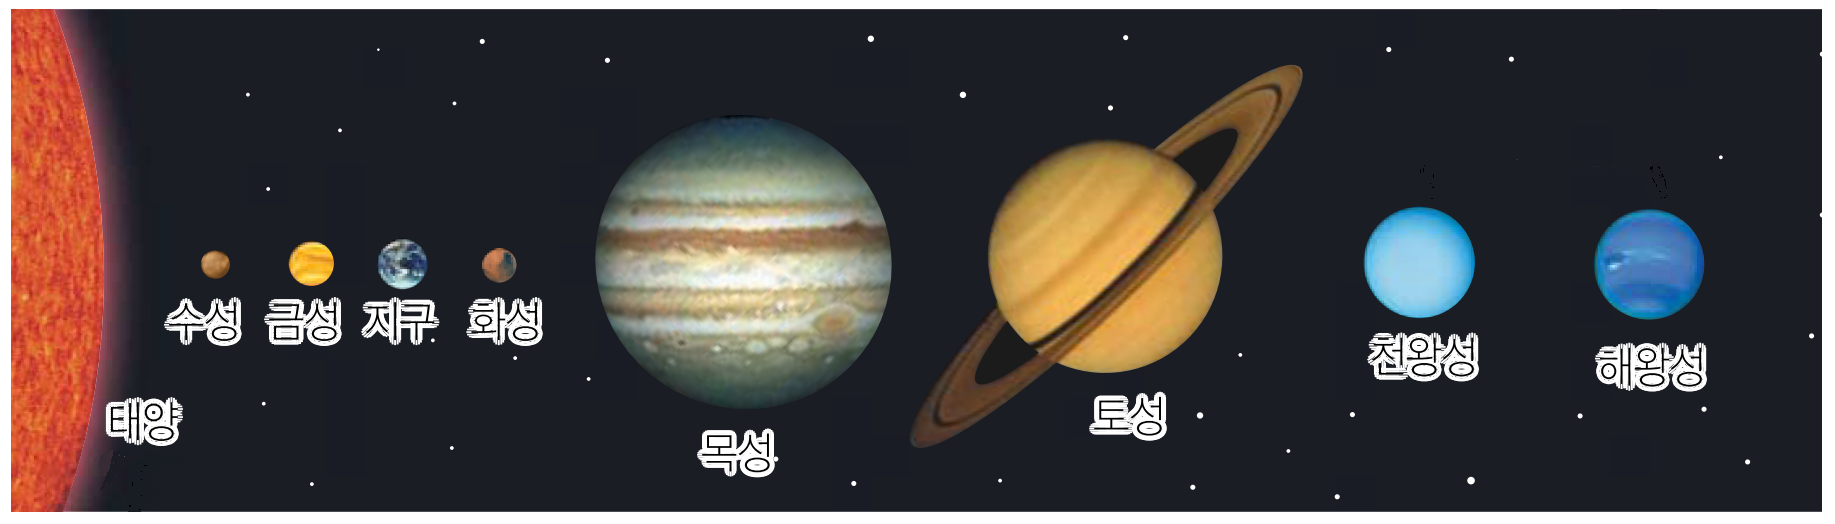 태양계 천체들의 상대적인 크기